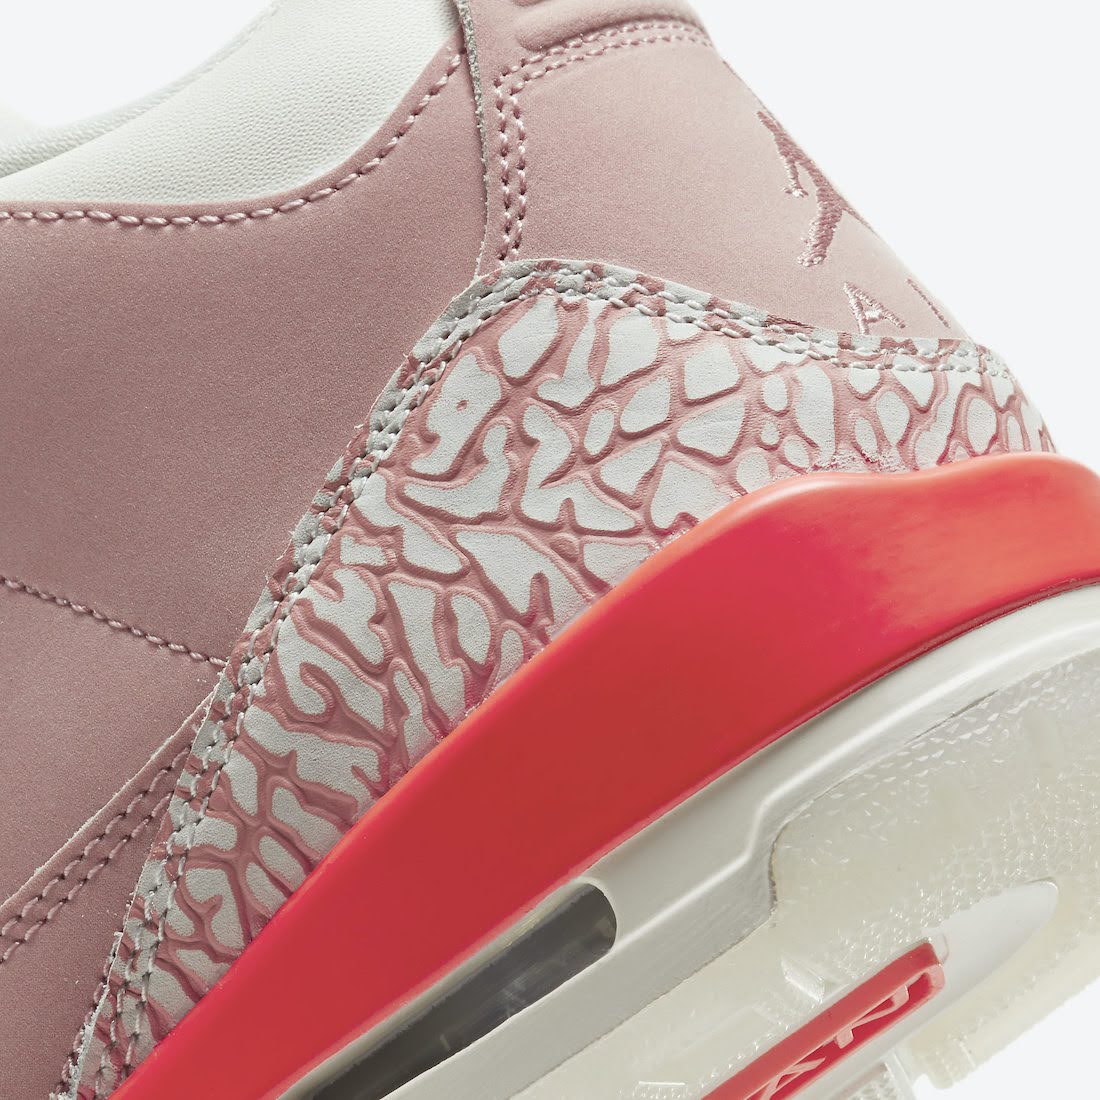 ナイキ ウィメンズ エア ジョーダン 3 "ラストピンク" Nike-Air-Jordan-3-Rust-Pink-CK9246-600-heel-closeup